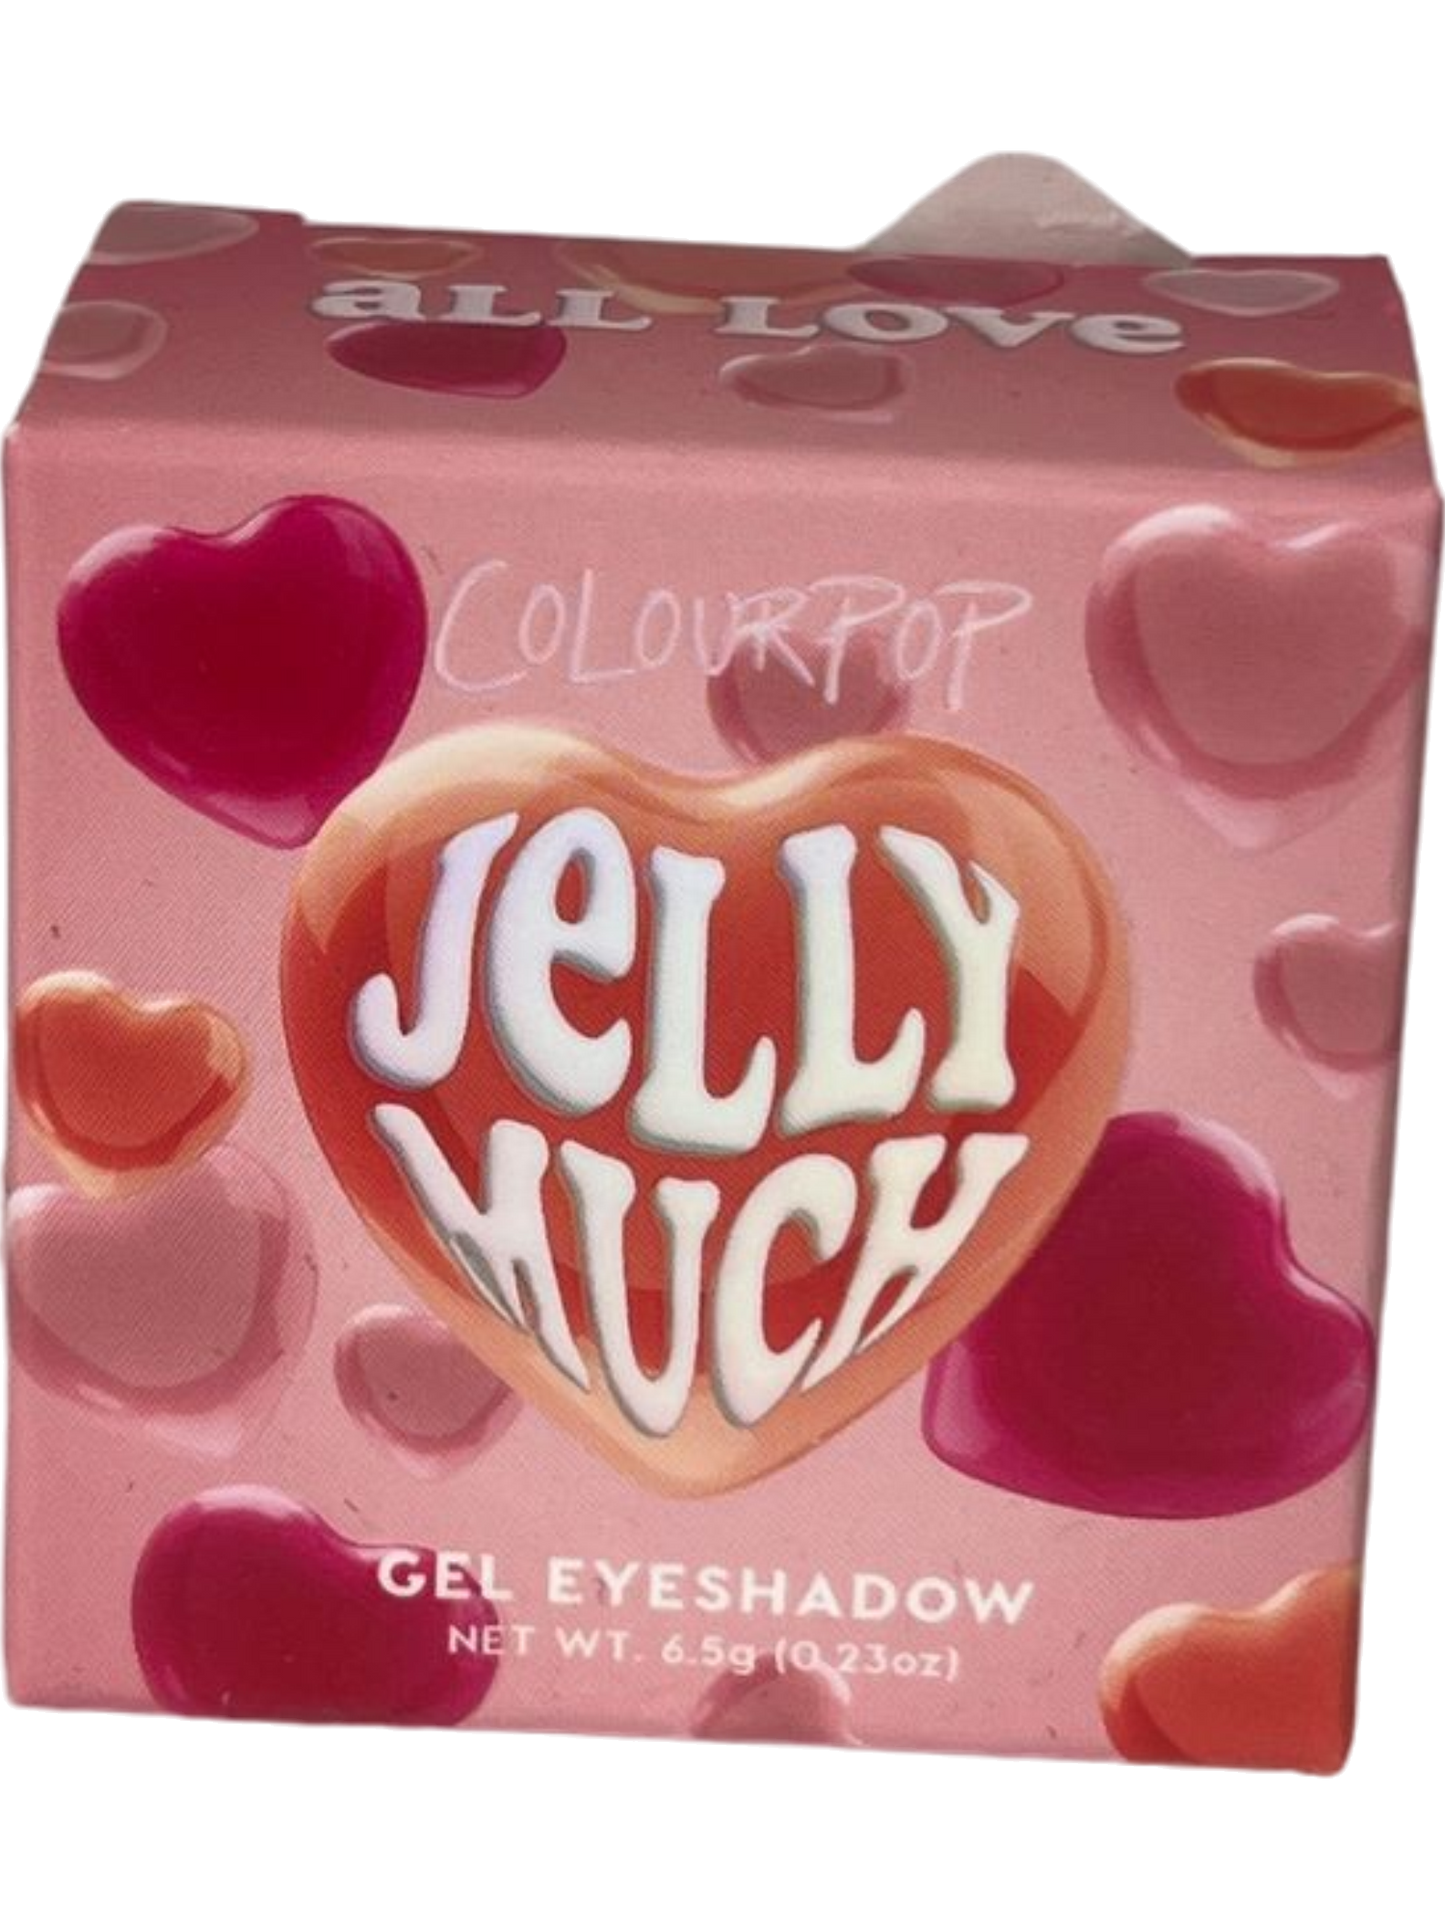 Colourpop Pink Jelly Much Gel Eyeshadow